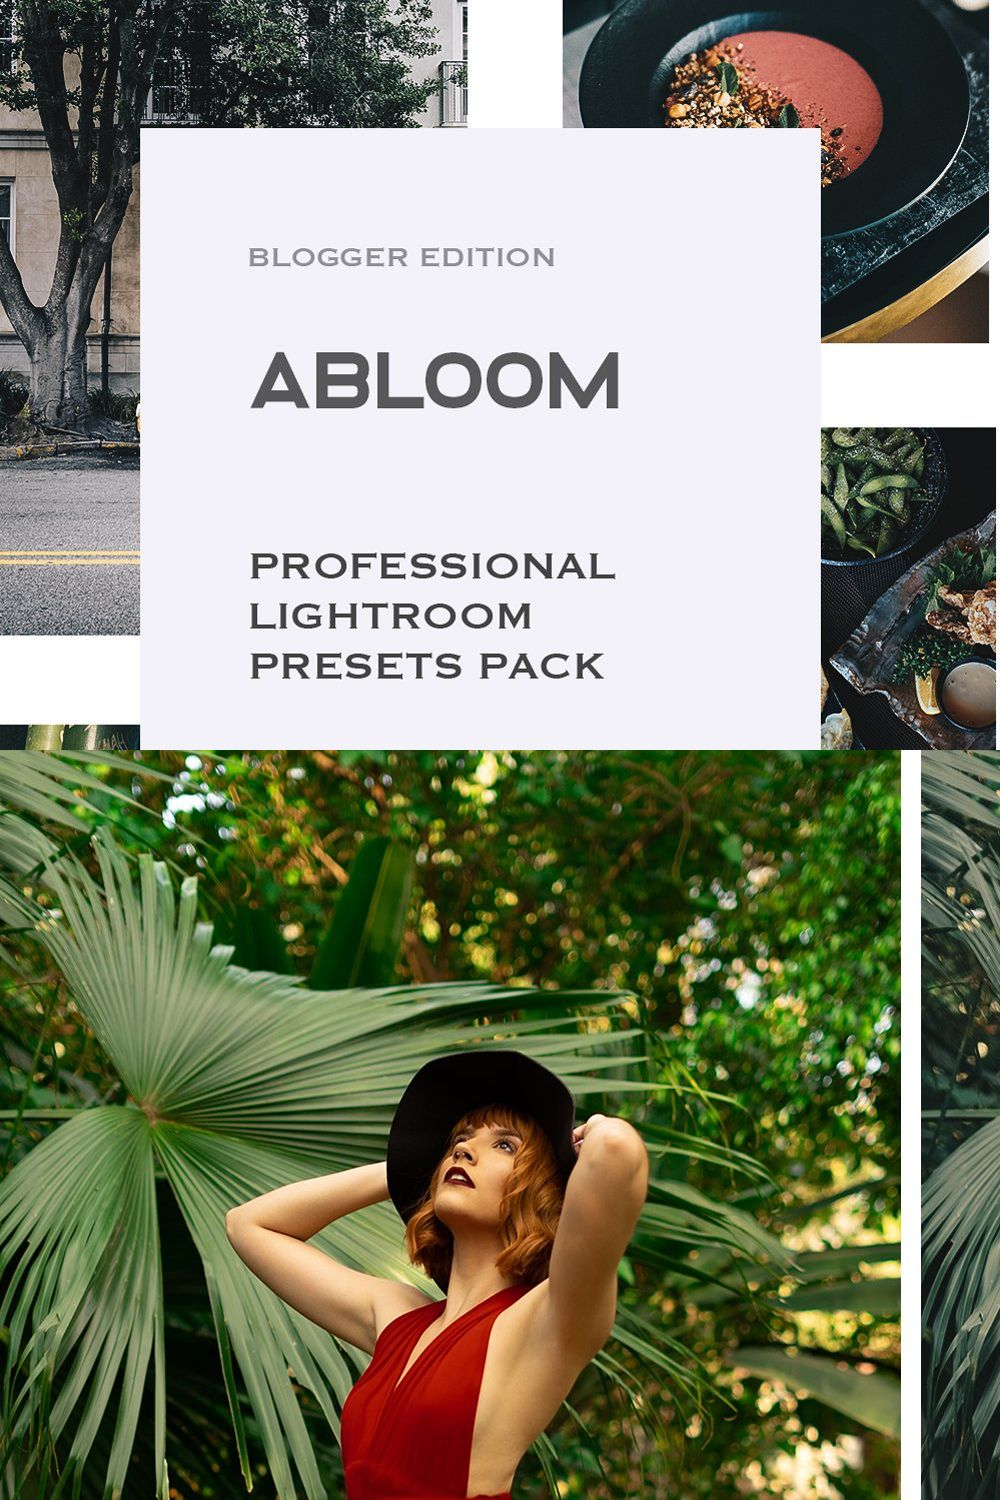 Abloom Lightroom Mobile Presets pinterest preview image.